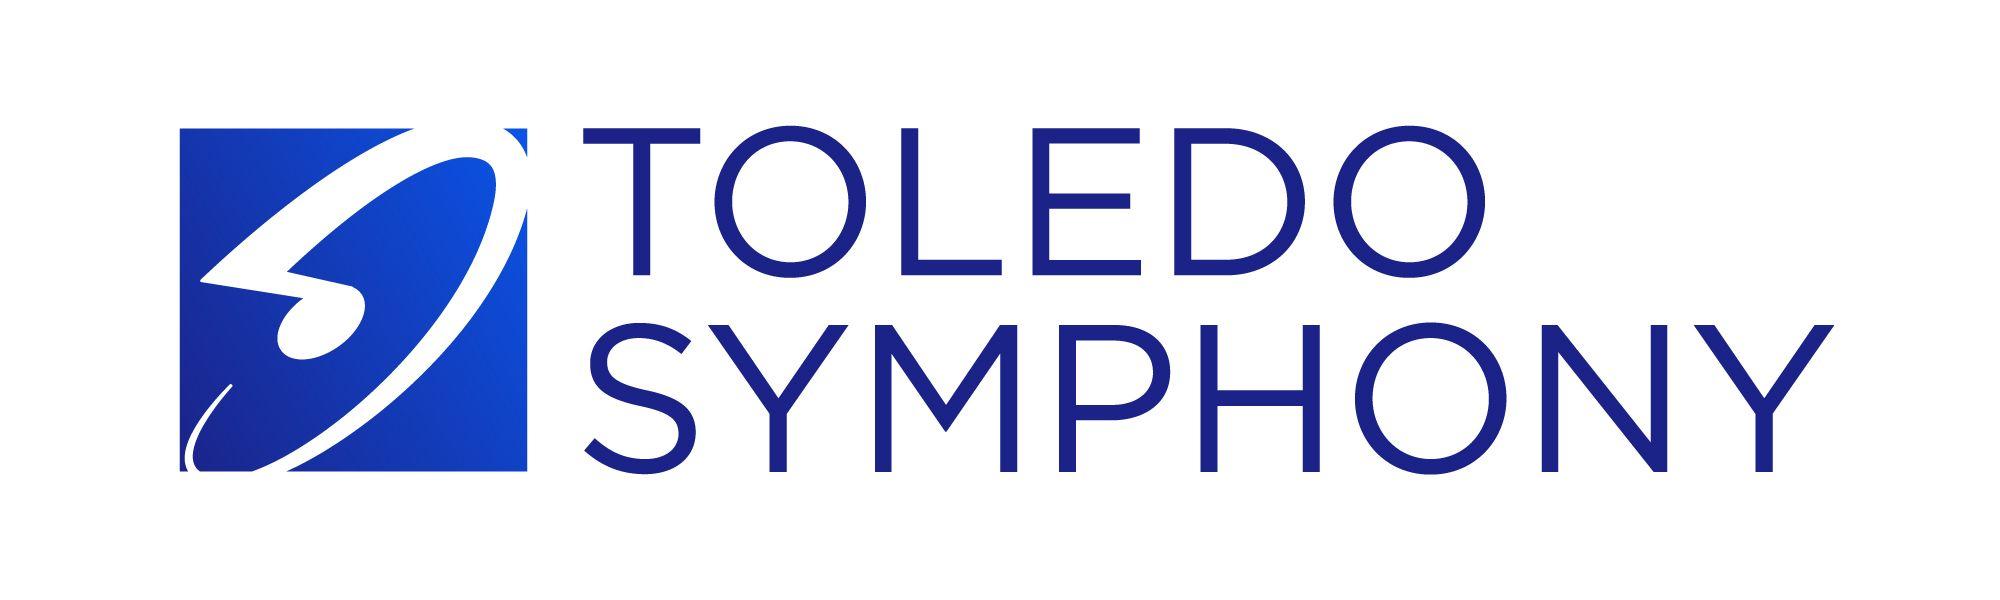 Symphony Logo - Toledo Symphony Orchestra Branding Assets - Toledo Symphony Orchestra